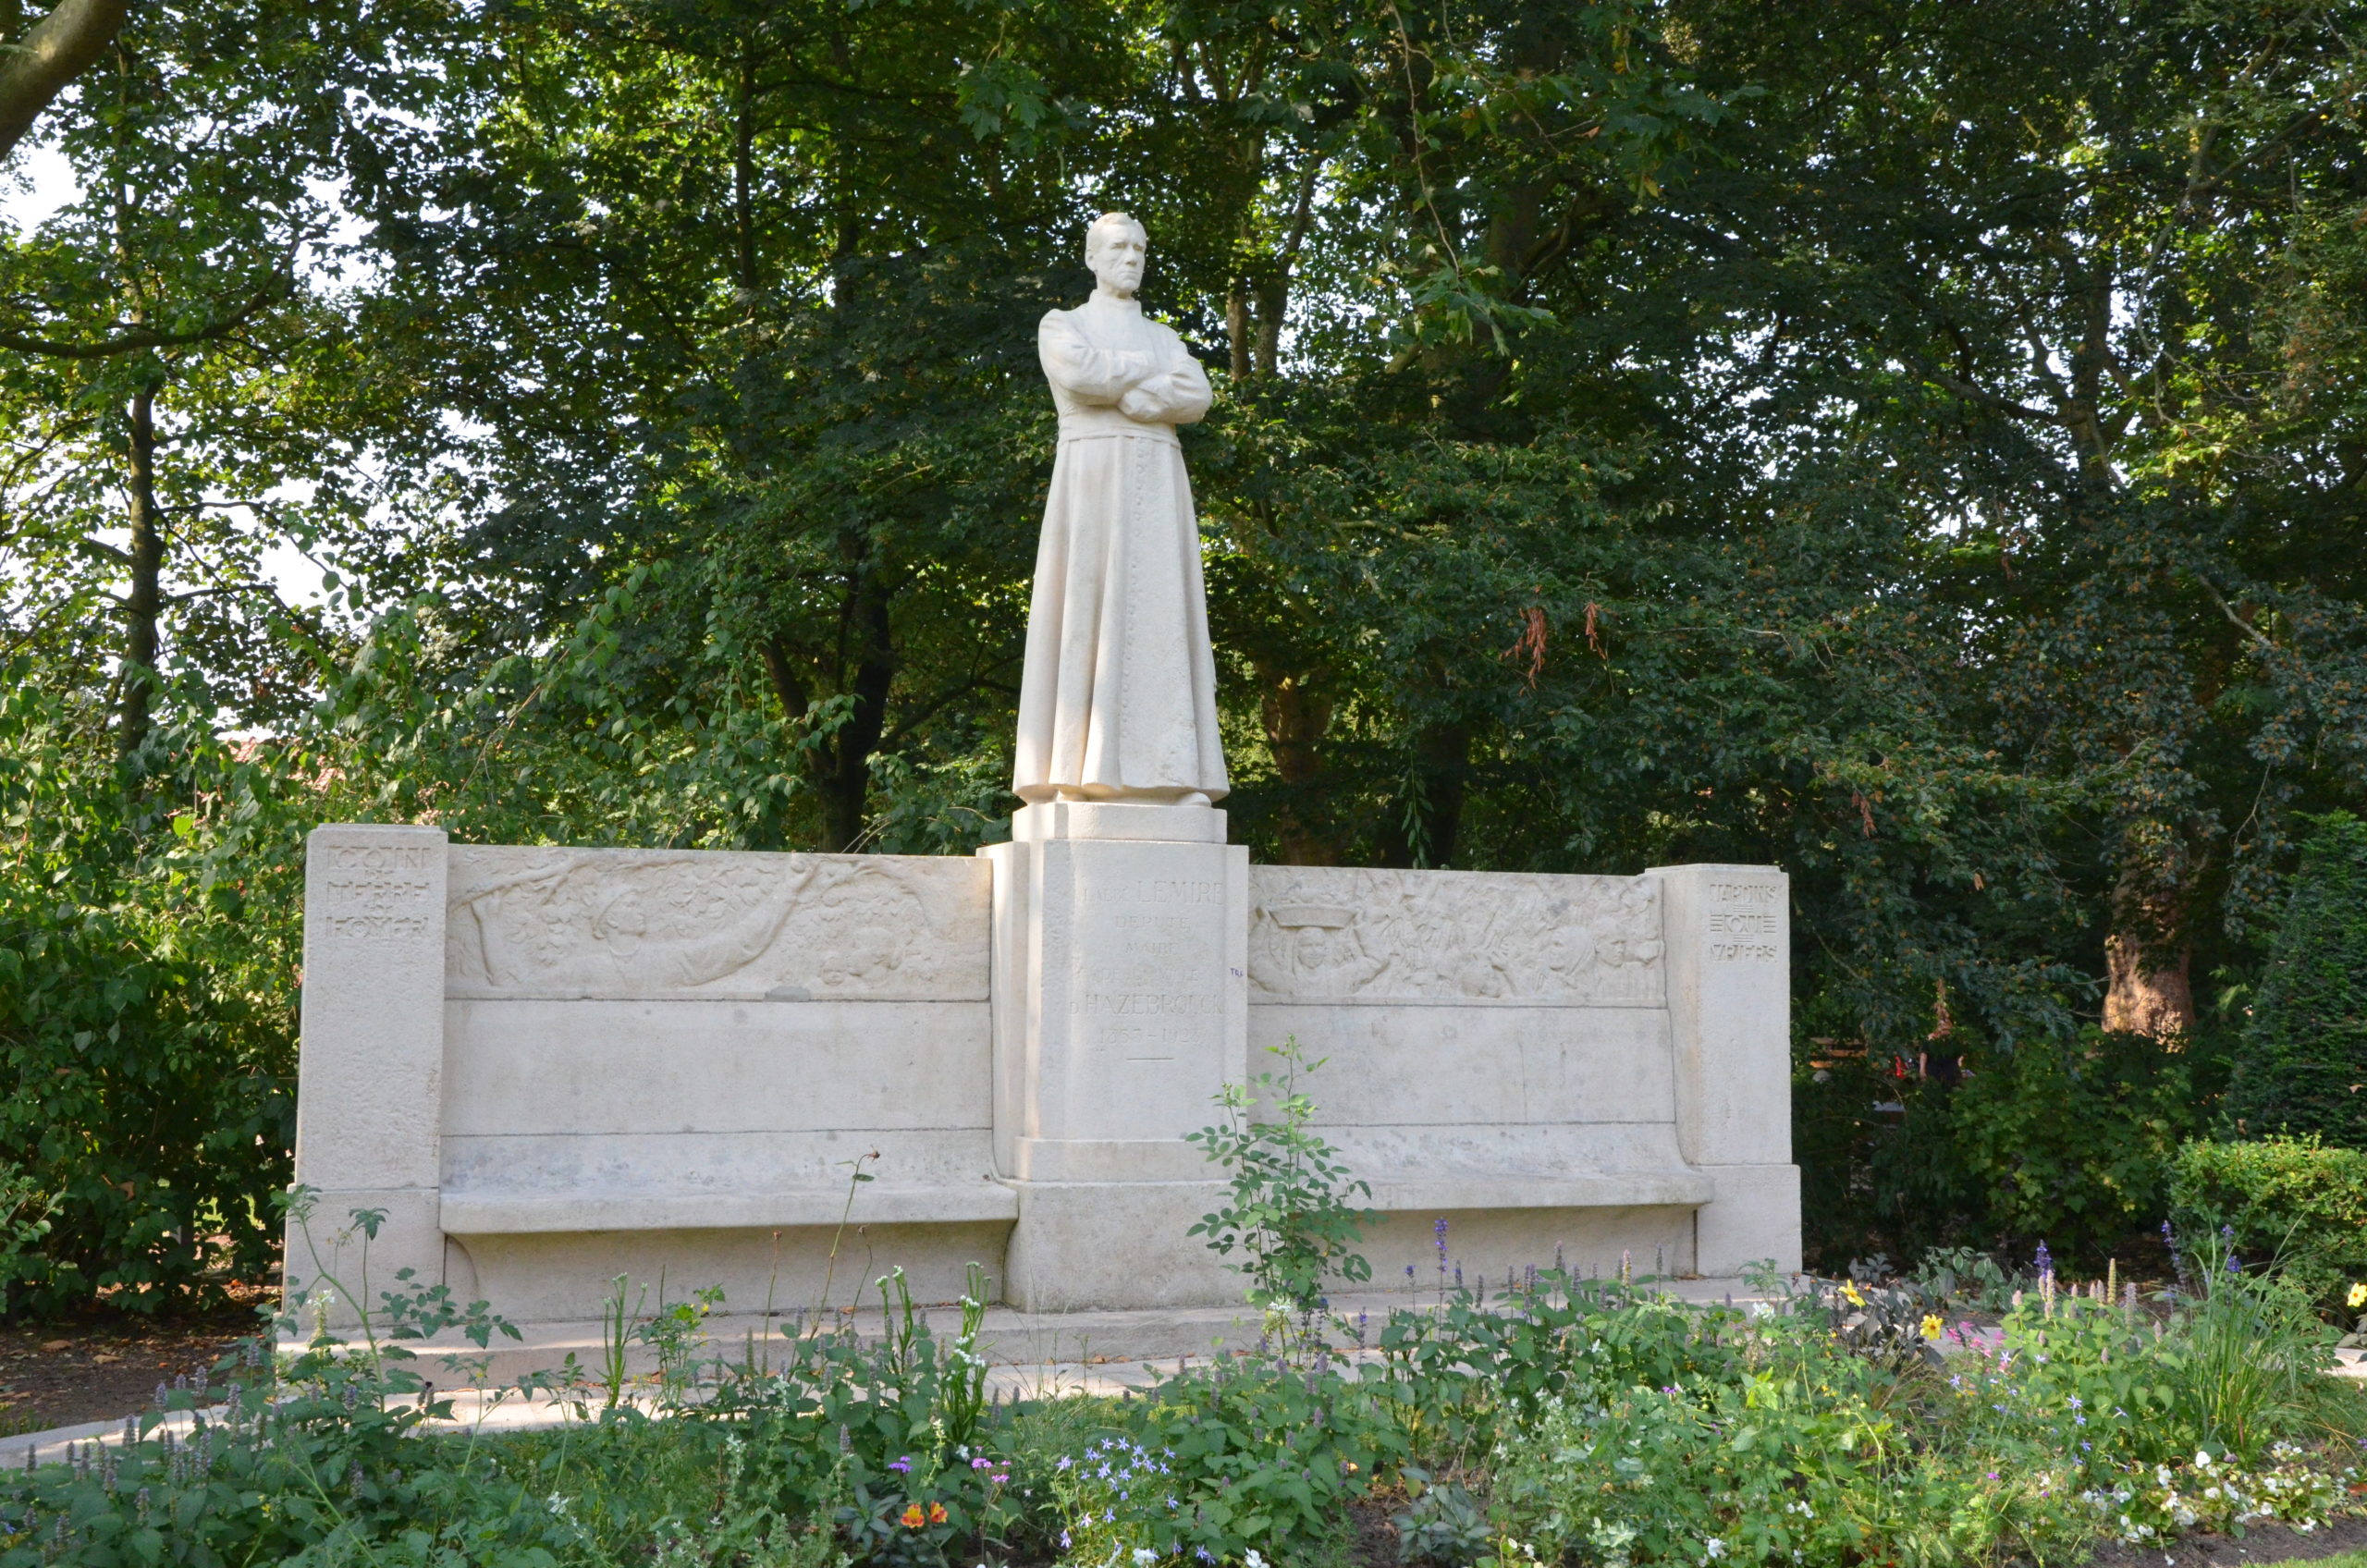 À deux pas de la maison, la statue de l’abbé Lemire, dans le jardin public. (Photo Jean-Pascal Vanhove)